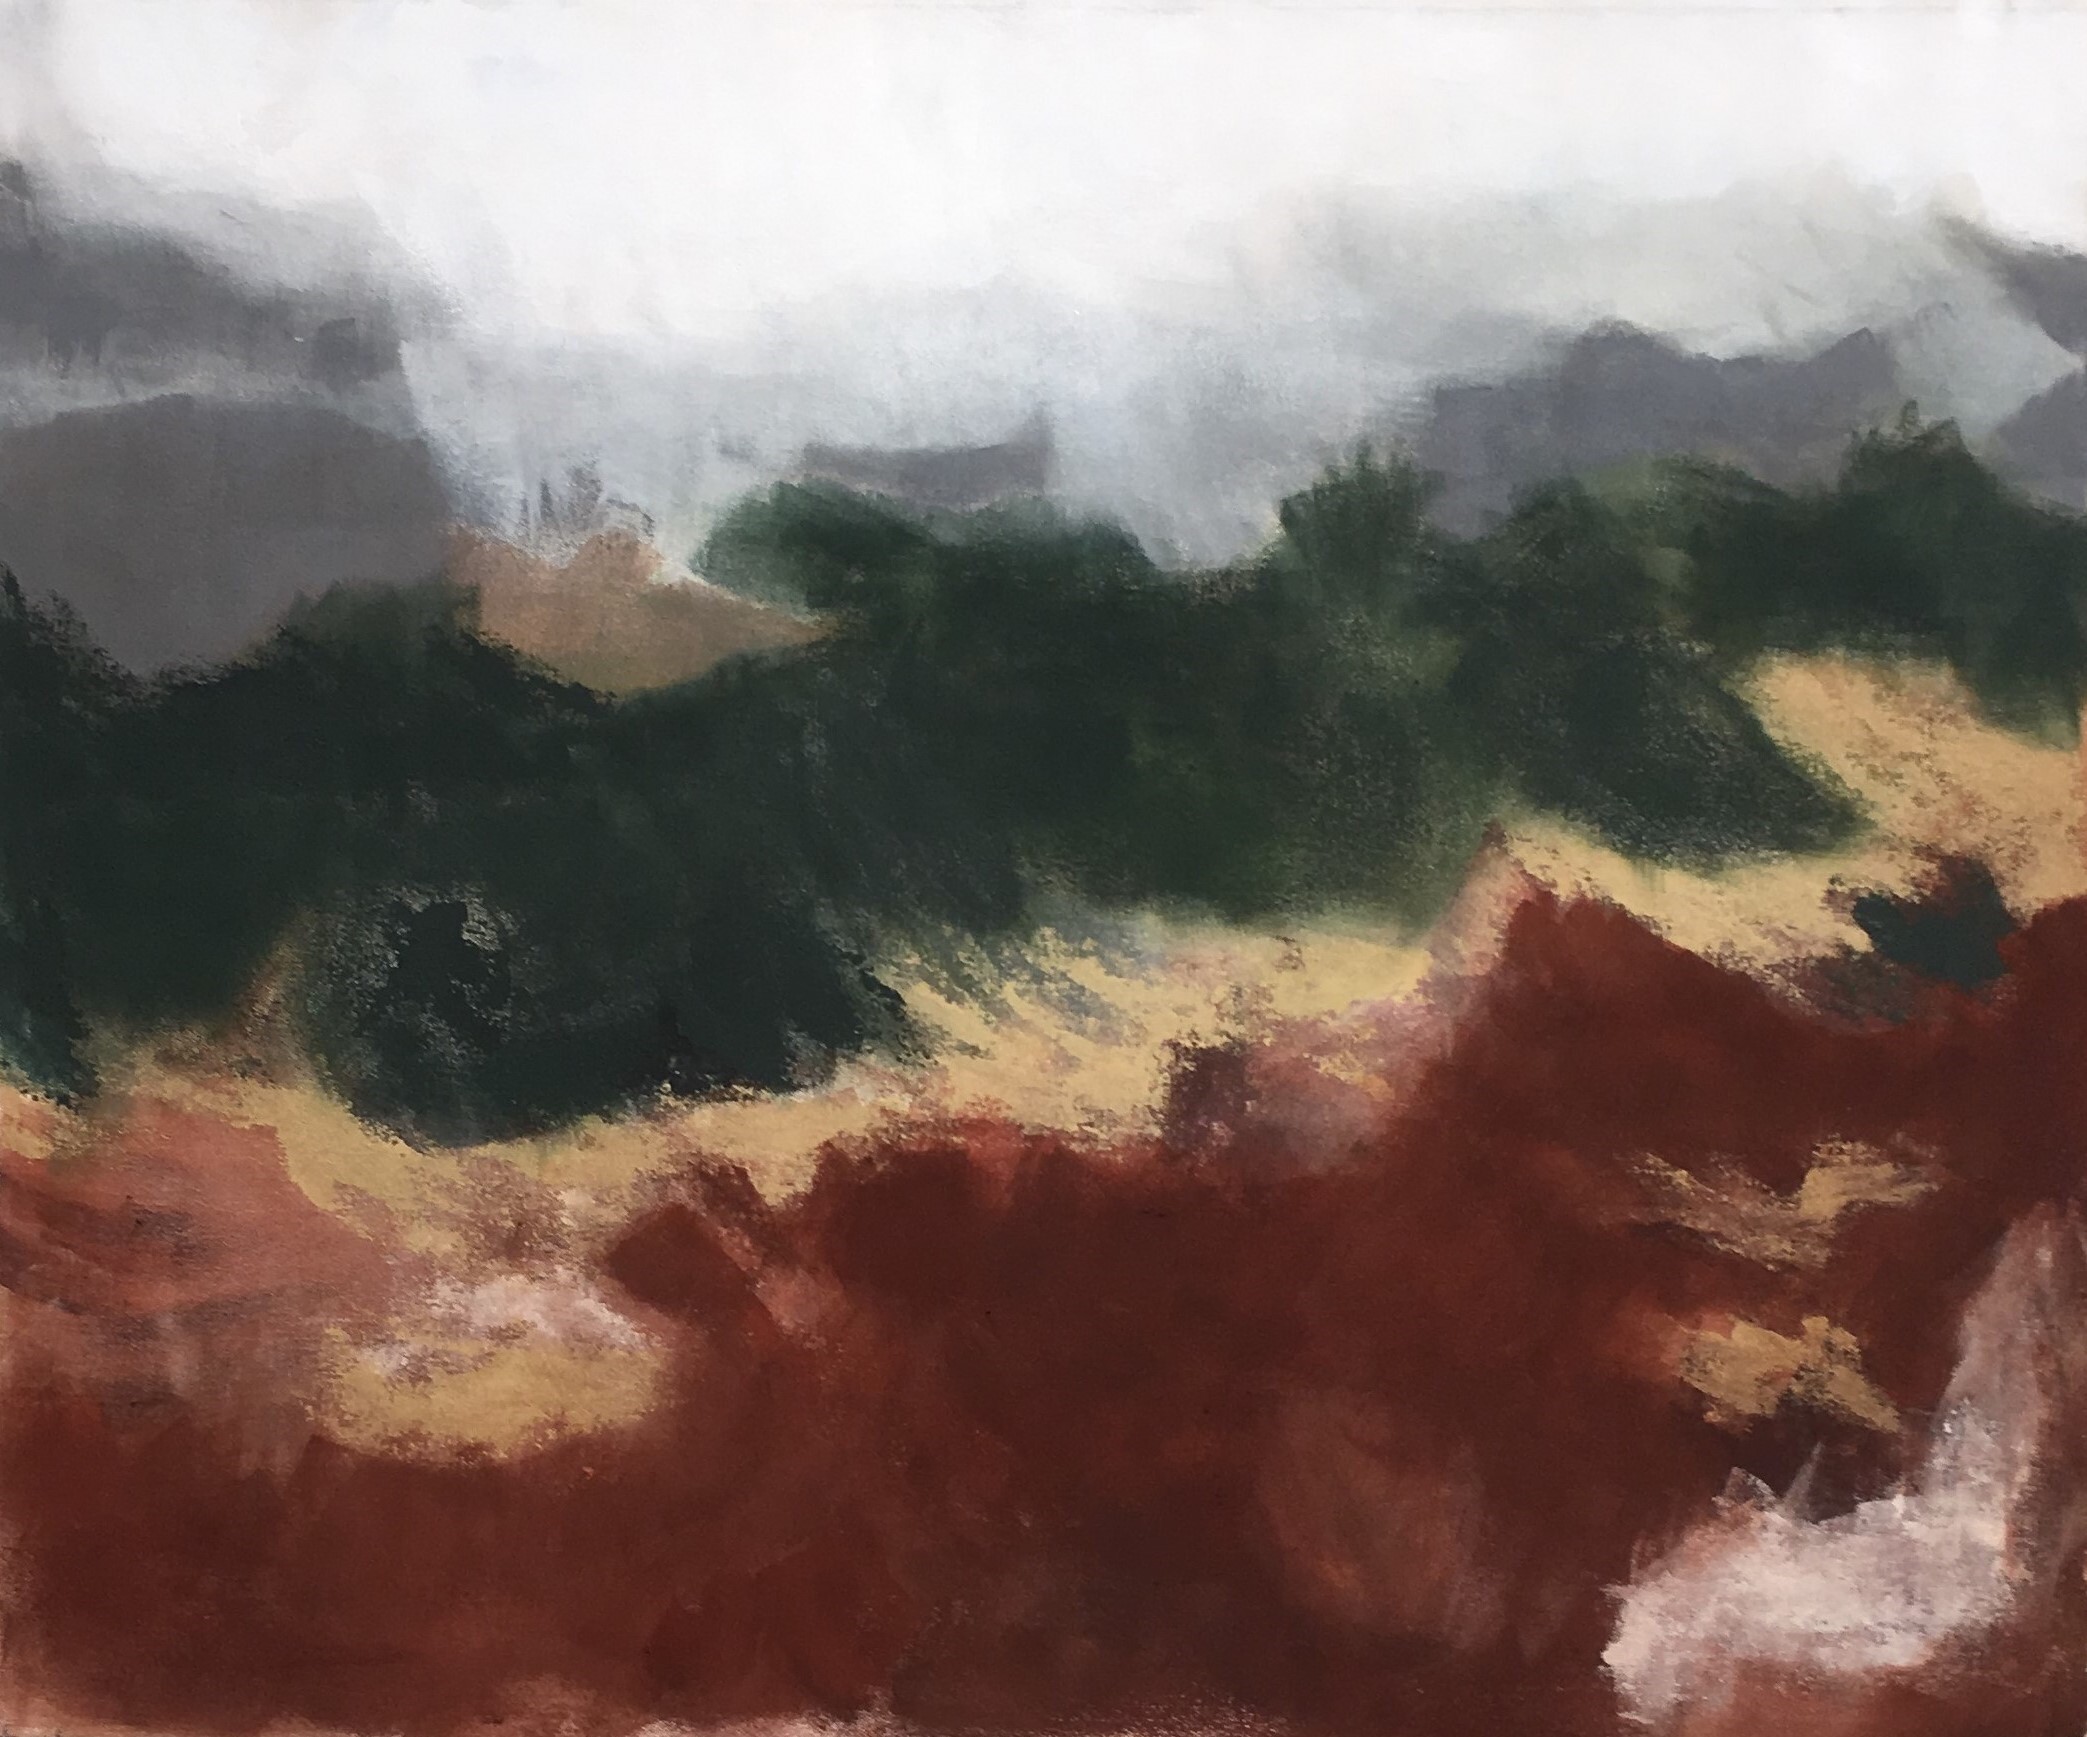 N° 8026 - Paysage - Acrylique, pigments et brou de noix sur toile - 72 x 86 cm - 25 avril 2020